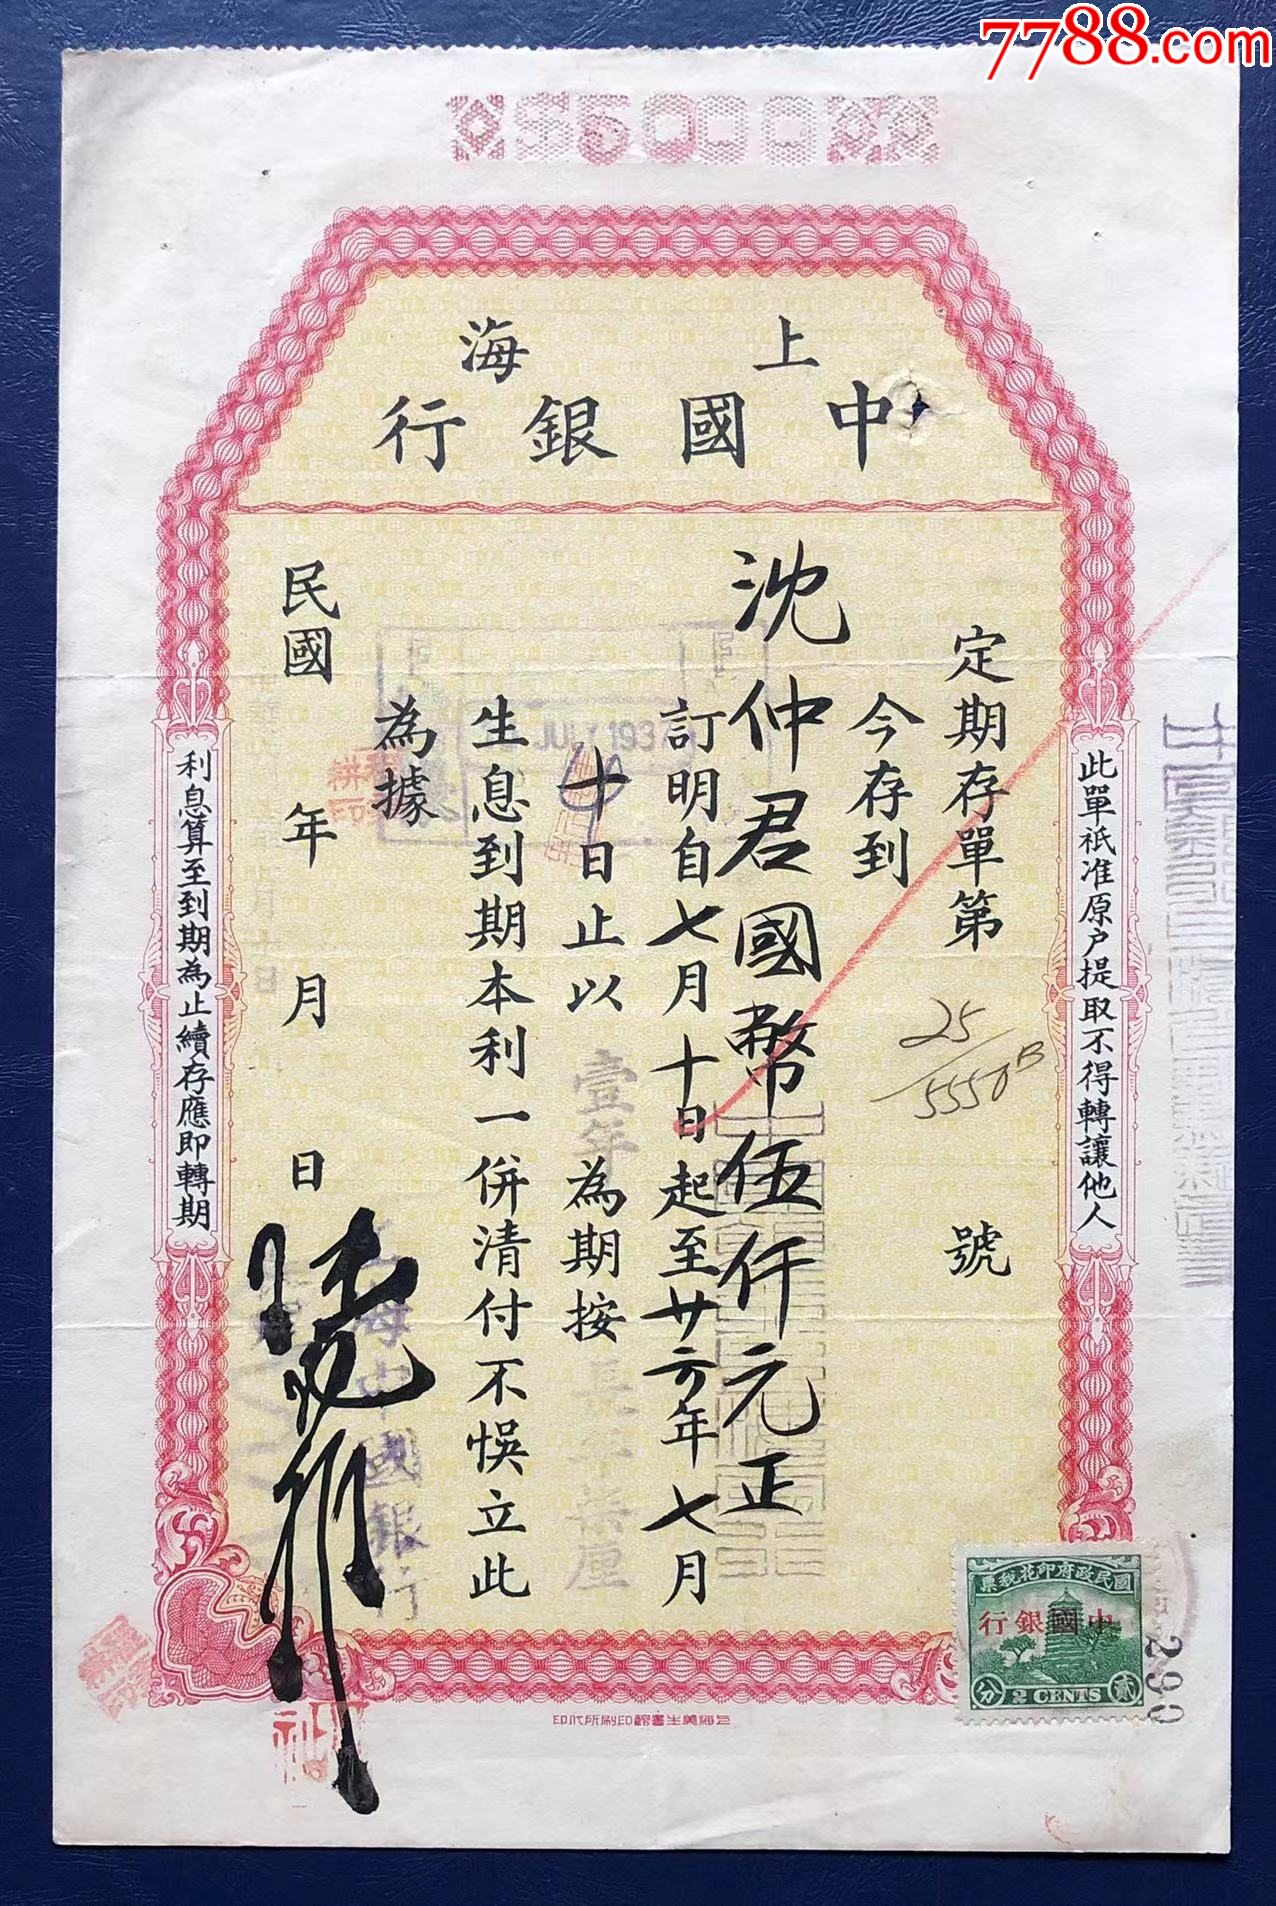 上海中国银行早期存款